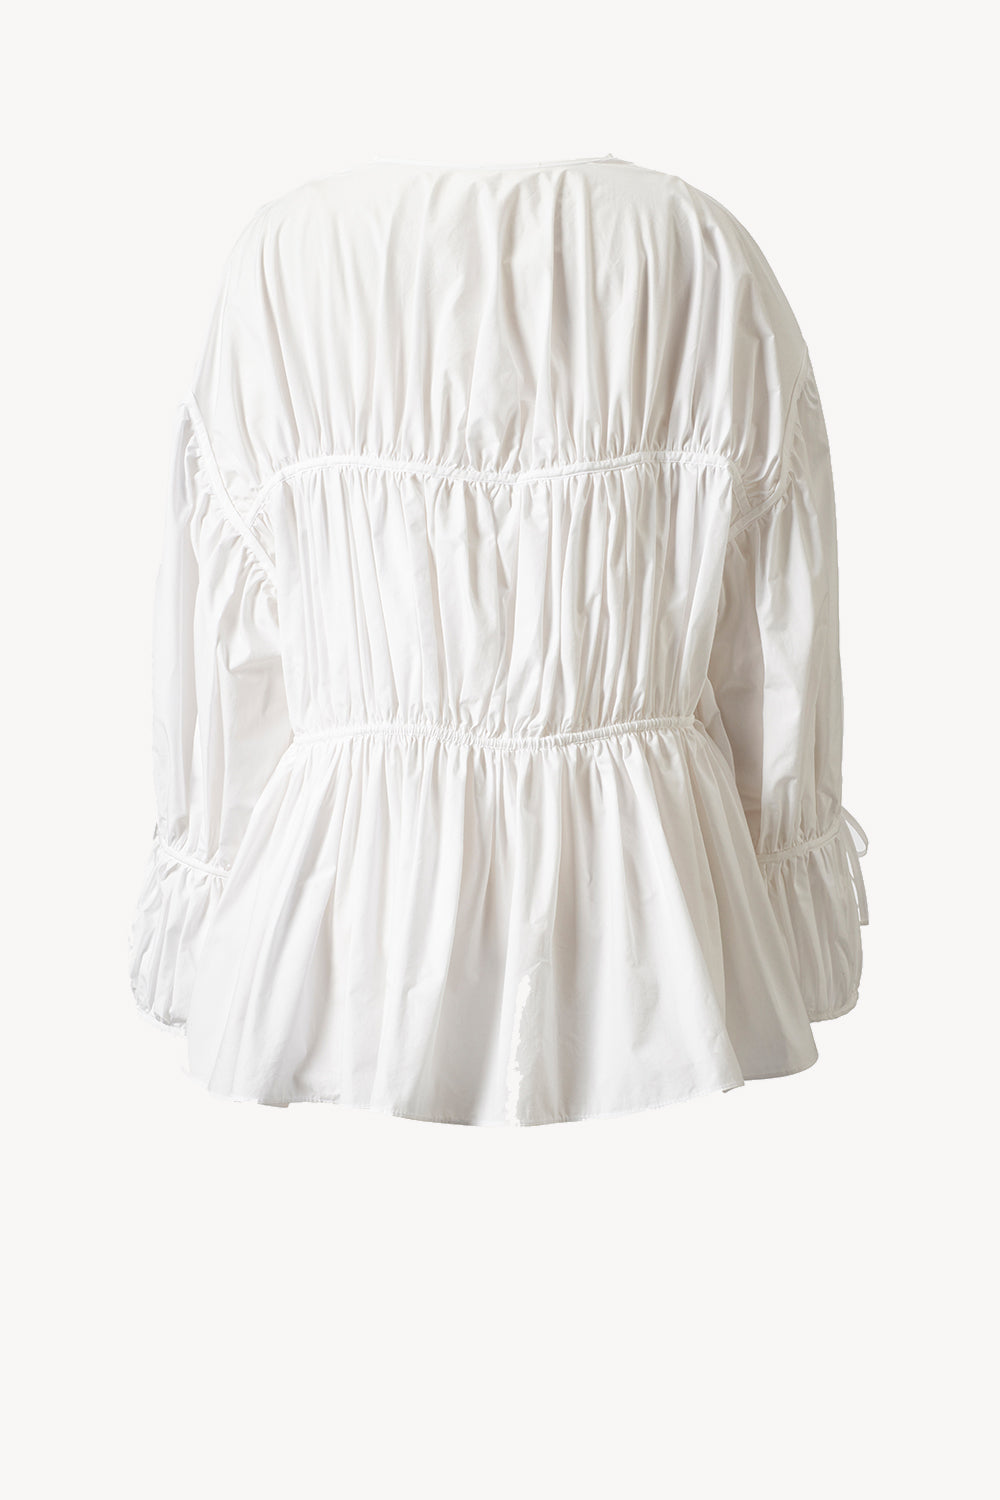 Cleo Top Organic Cotton White · TOVE Studio · Advanced Contemporary ...